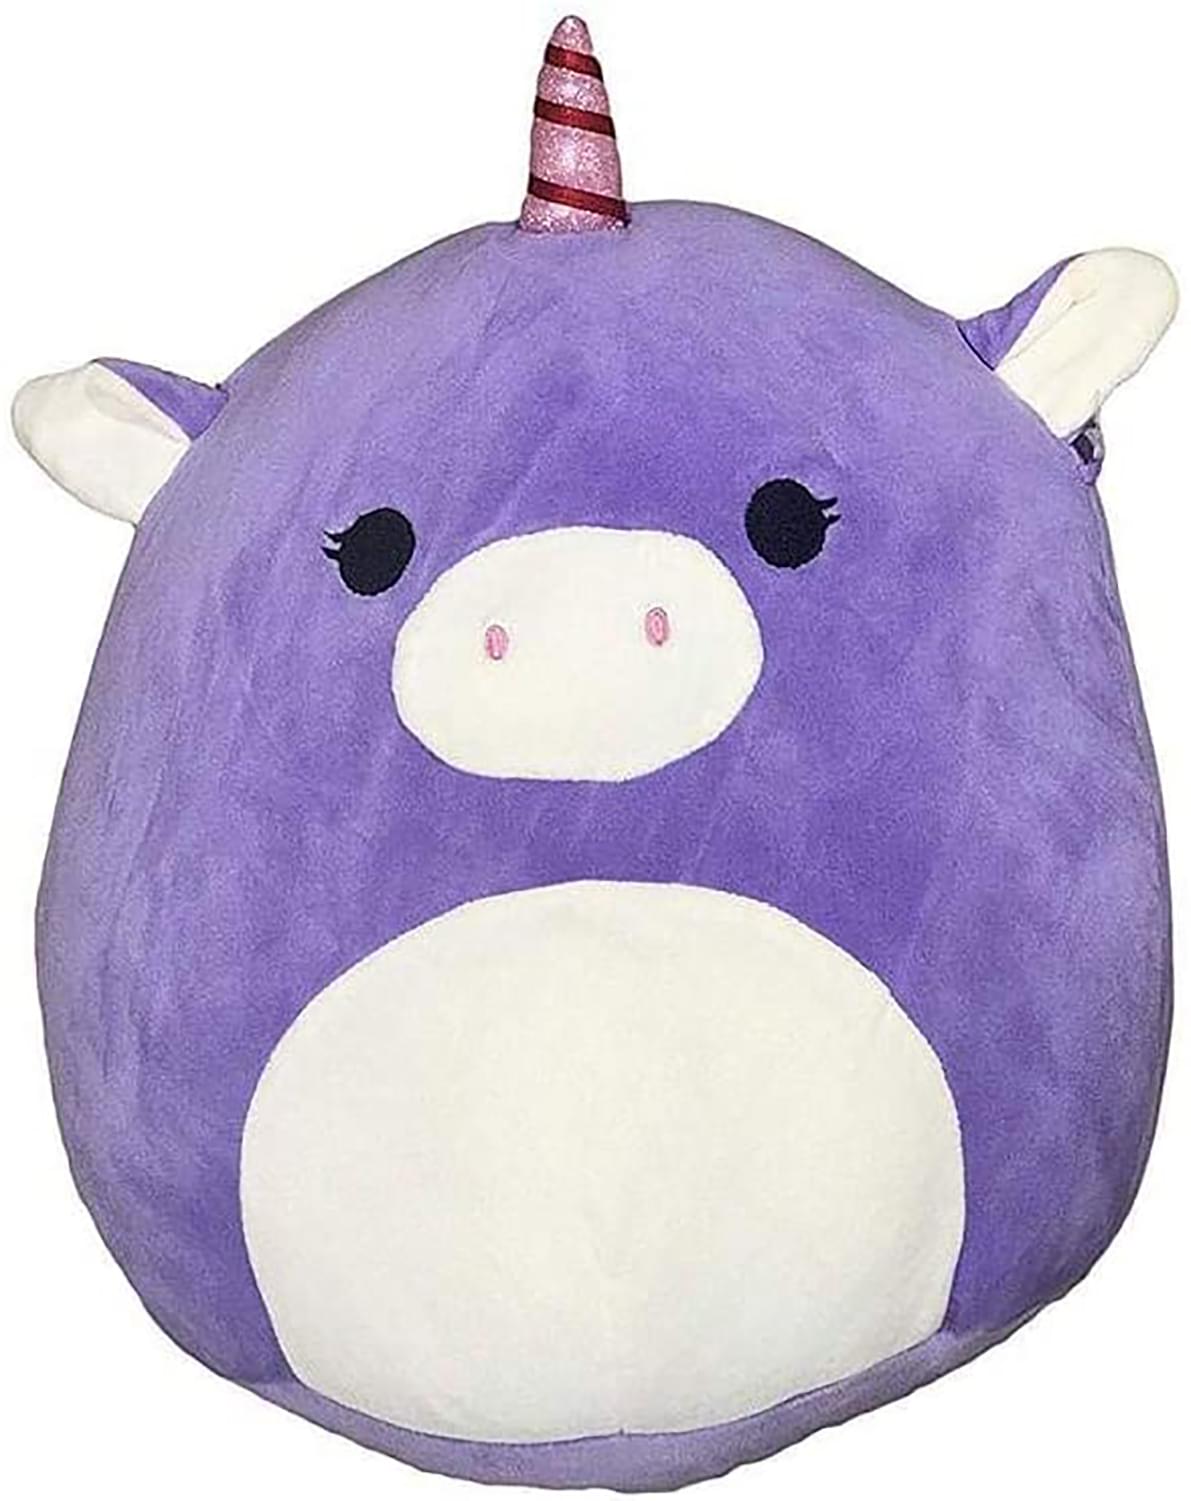 Squishmallow 8 Inch Pillow Plush | Astrid the Purple Unicorn